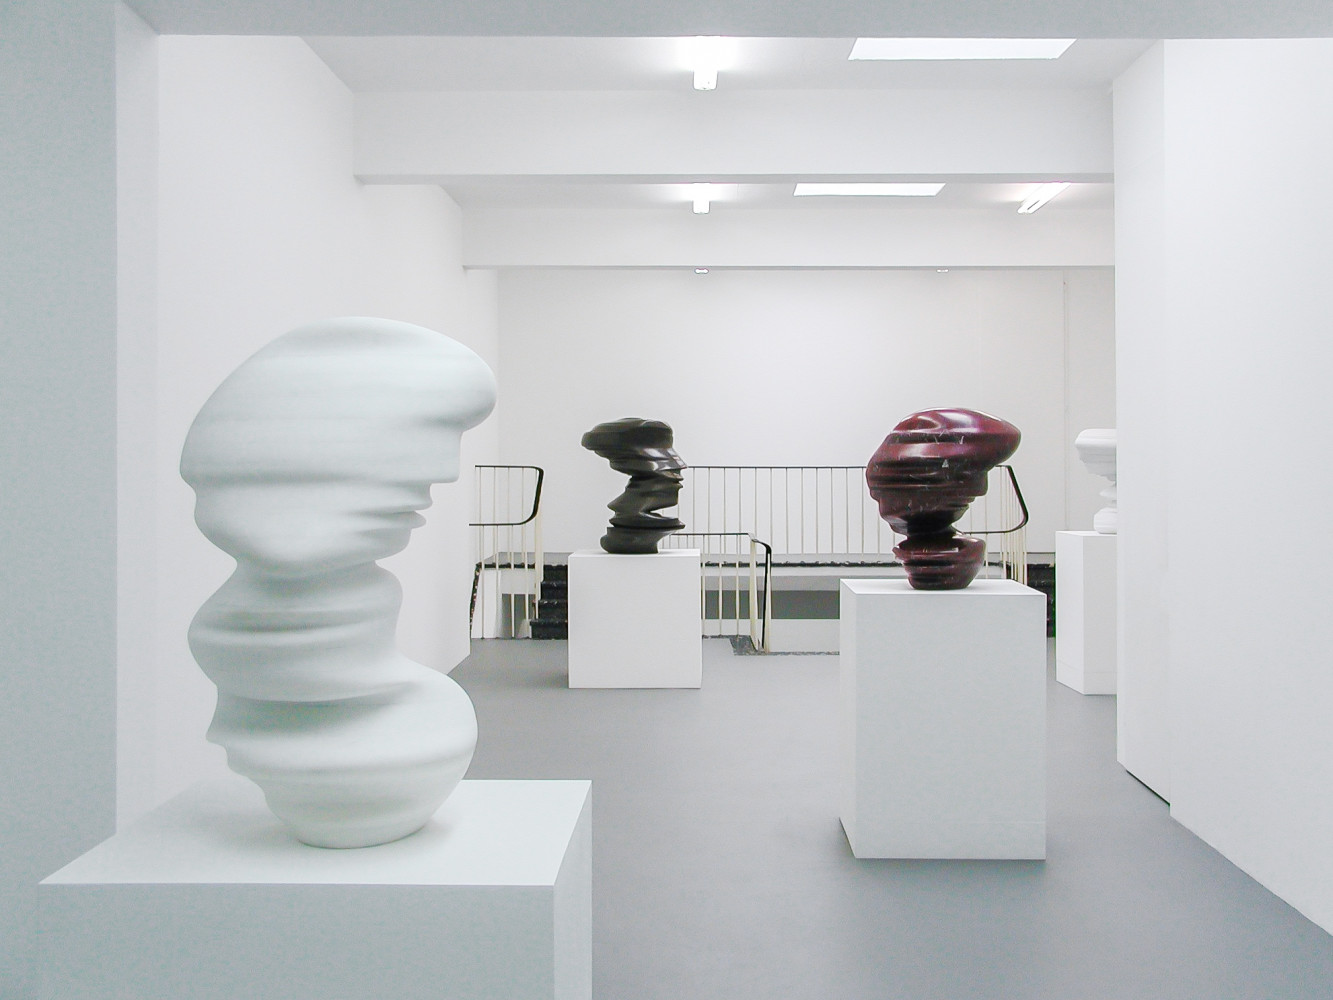 Tony Cragg, ‘Sculptures’, Installationsansicht, Buchmann Galerie Köln, 2002